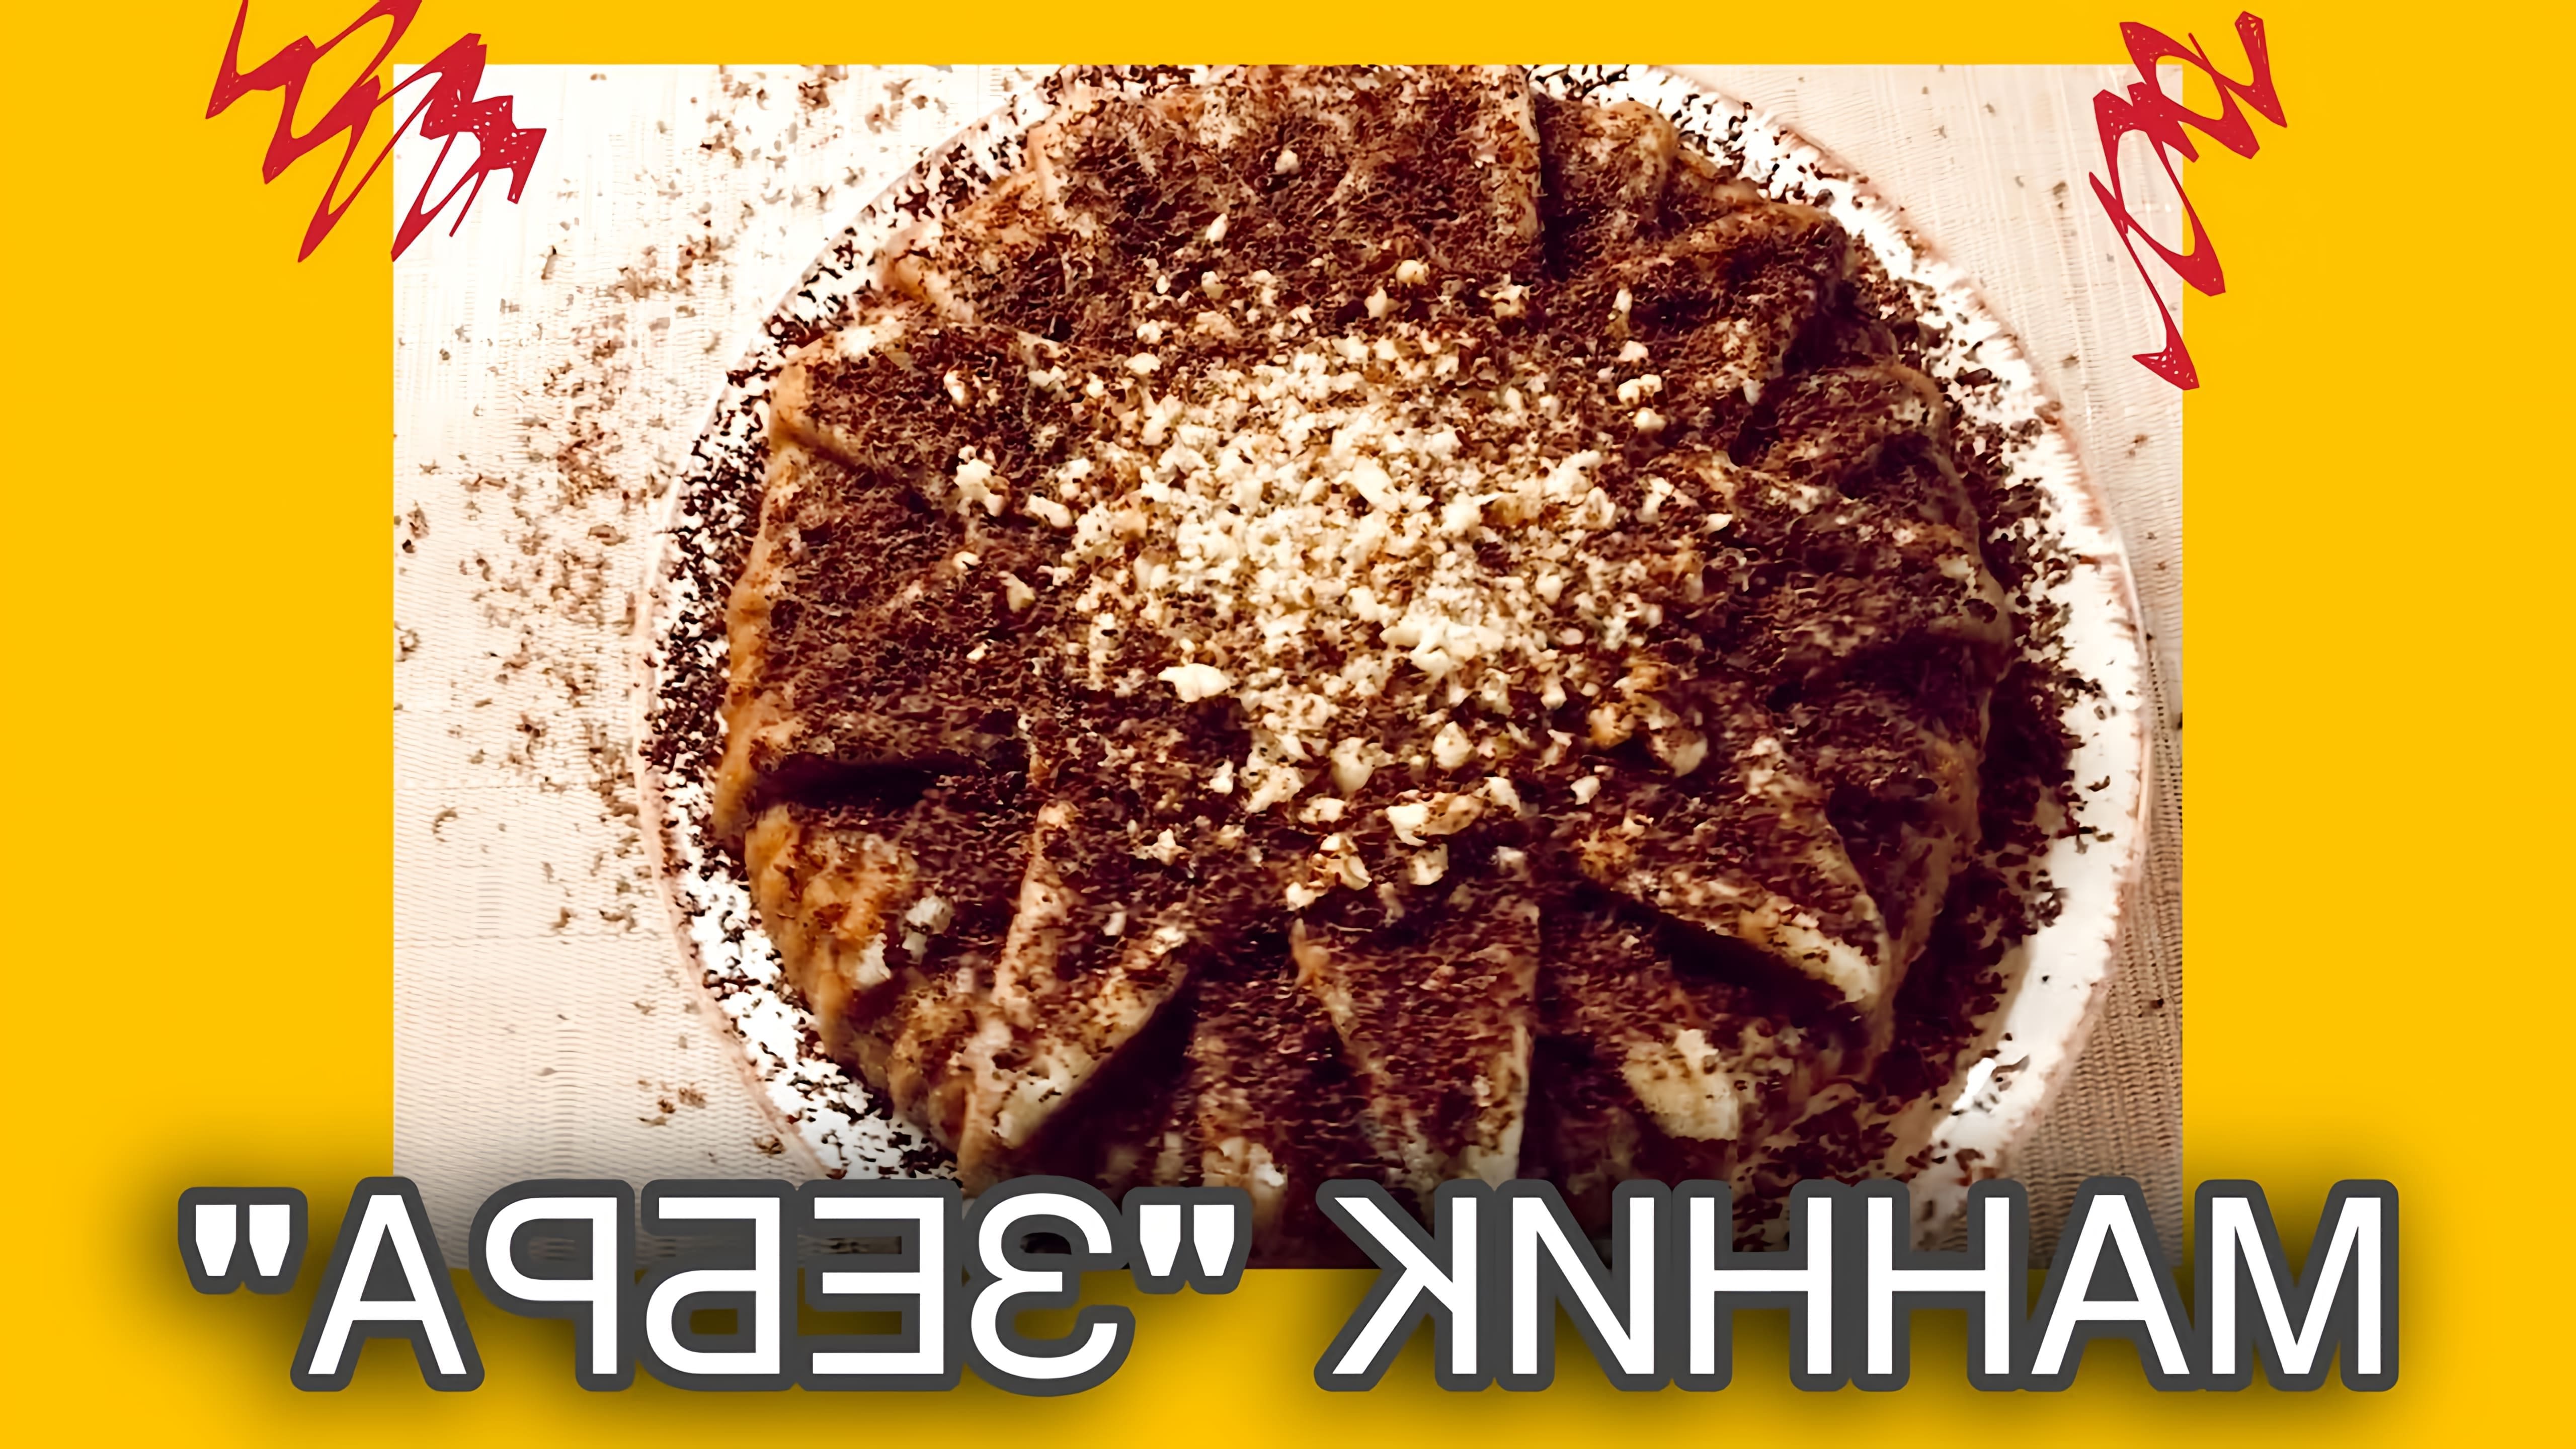 МАННИК "ЗЕБРА" НА МОЛОКЕ - это видео-ролик, который демонстрирует процесс приготовления вкусного и оригинального десерта